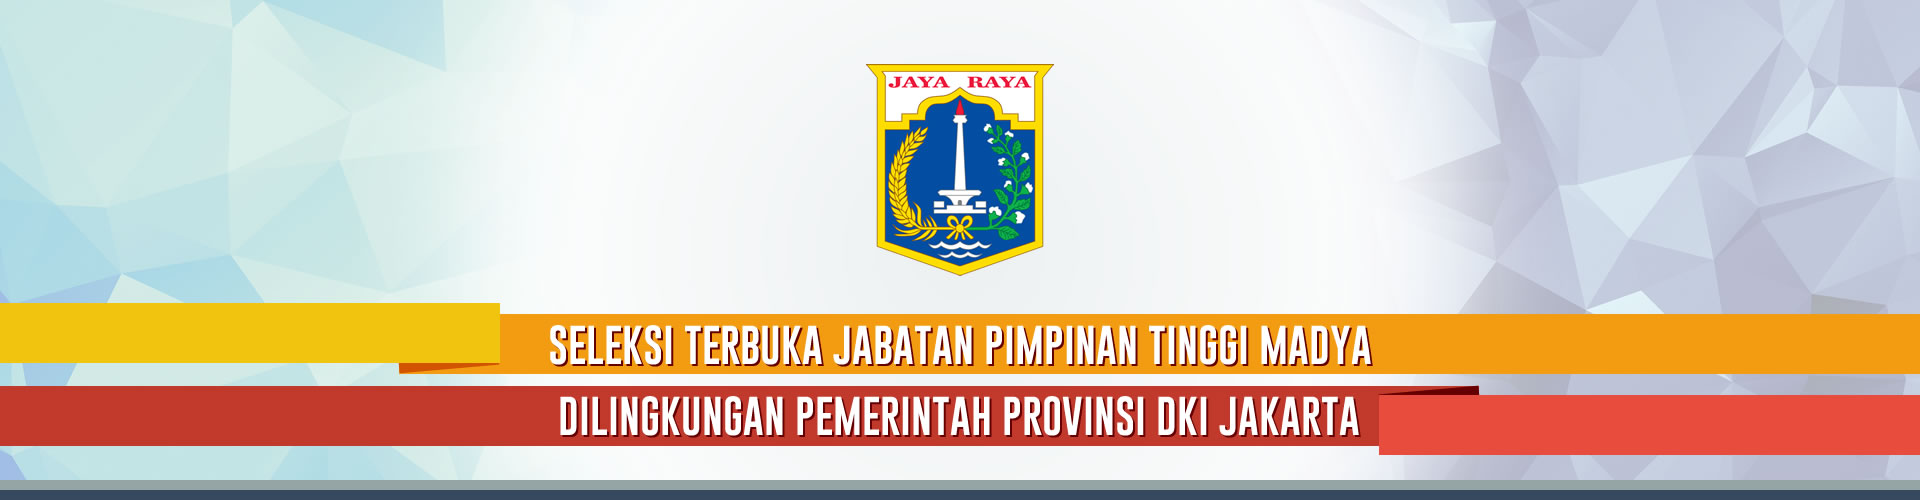 Seleksi Terbuka Jabatan Pimpinan Tinggi Pratama - Pemerintah Provinsi DKI Jakarta Tahun 2018